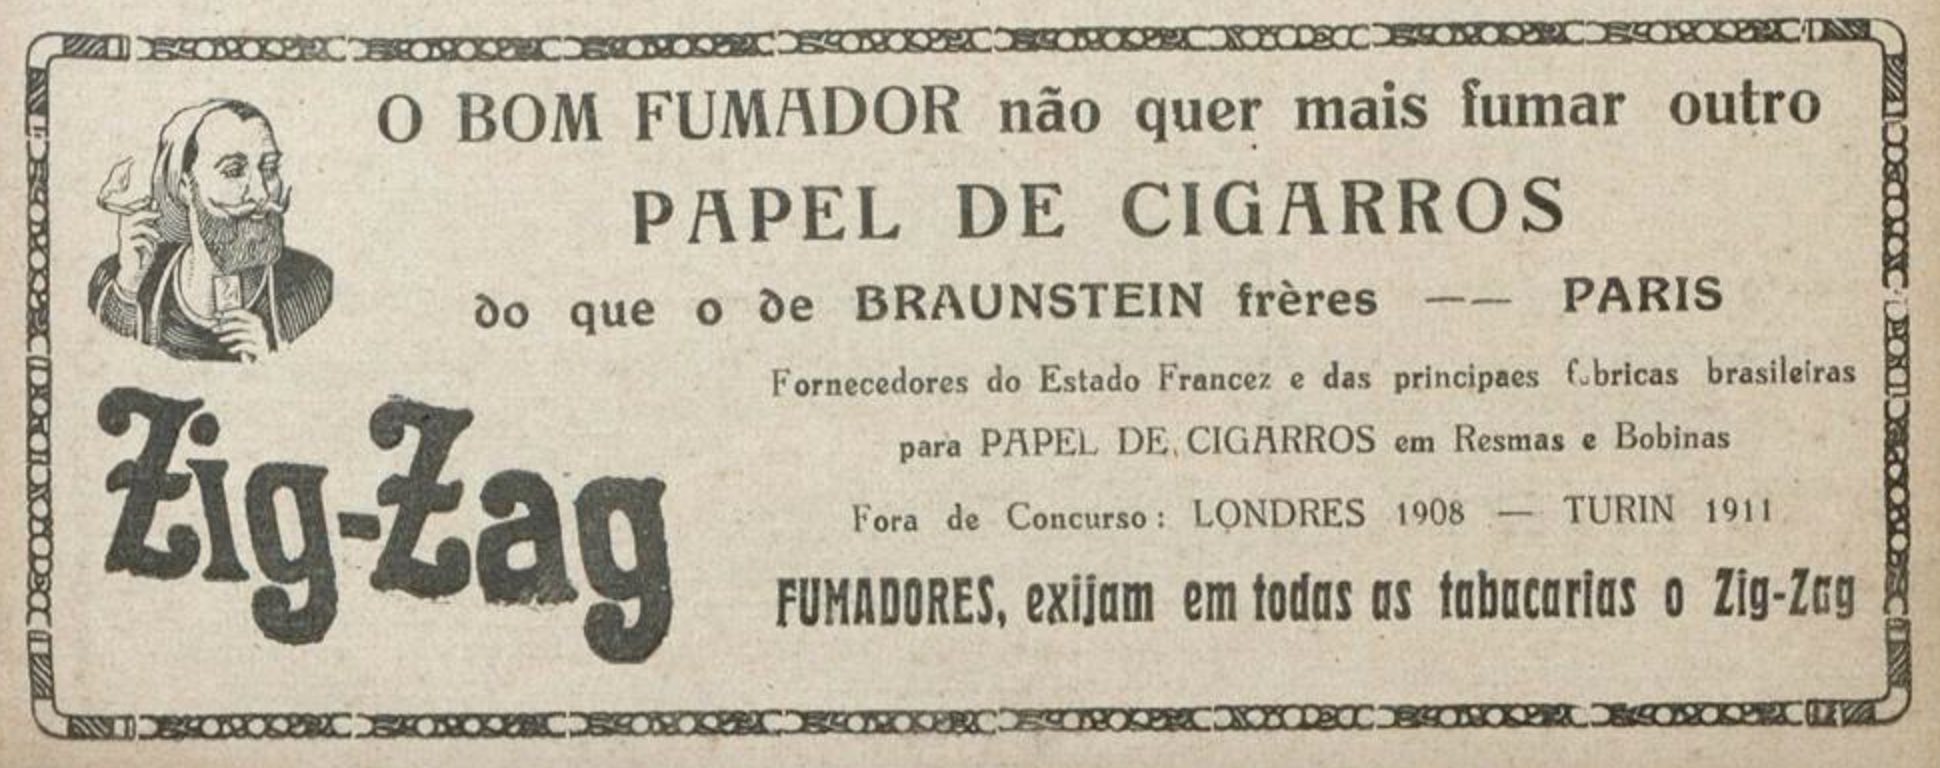 Campanha de 1925 promovendo o papel de cigarros da marca Zig-Zag